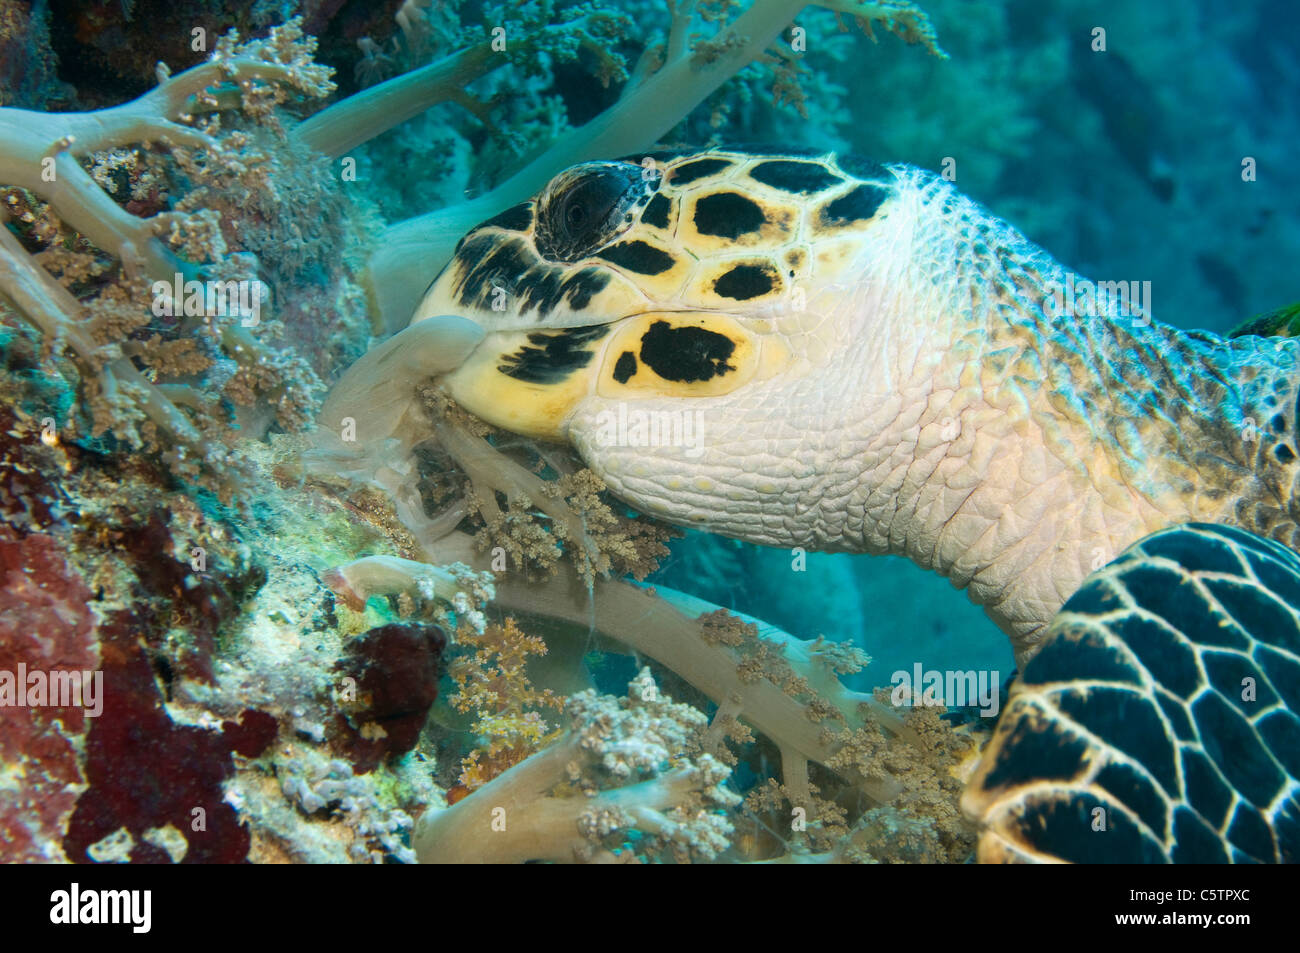 L'Egypte, Mer Rouge, la tortue imbriquée (Eretmochelys imbricata) la consommation de corail mou, close-up Banque D'Images